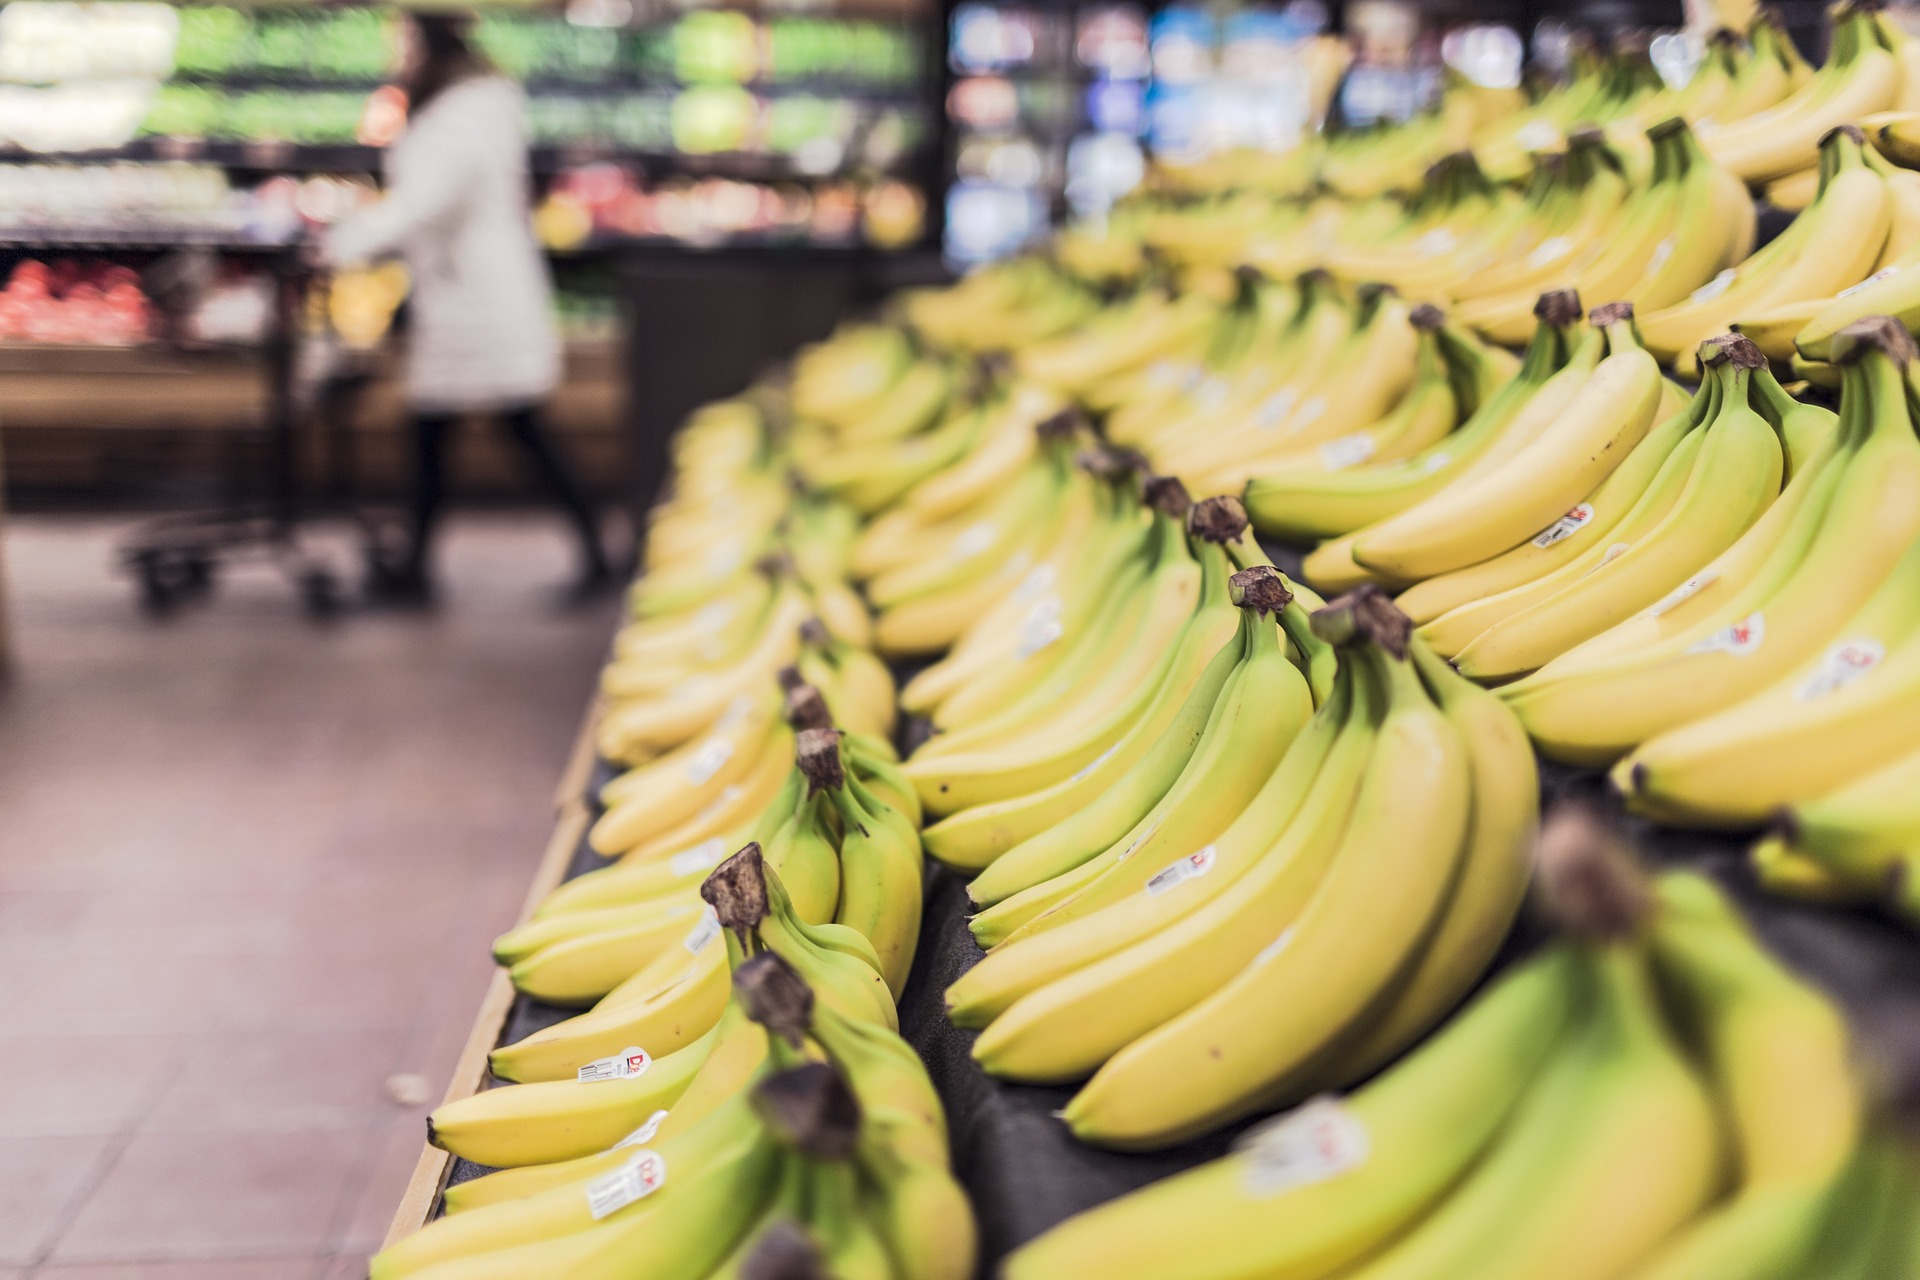 La troisième araignée découverte dans les bananes du supermarché